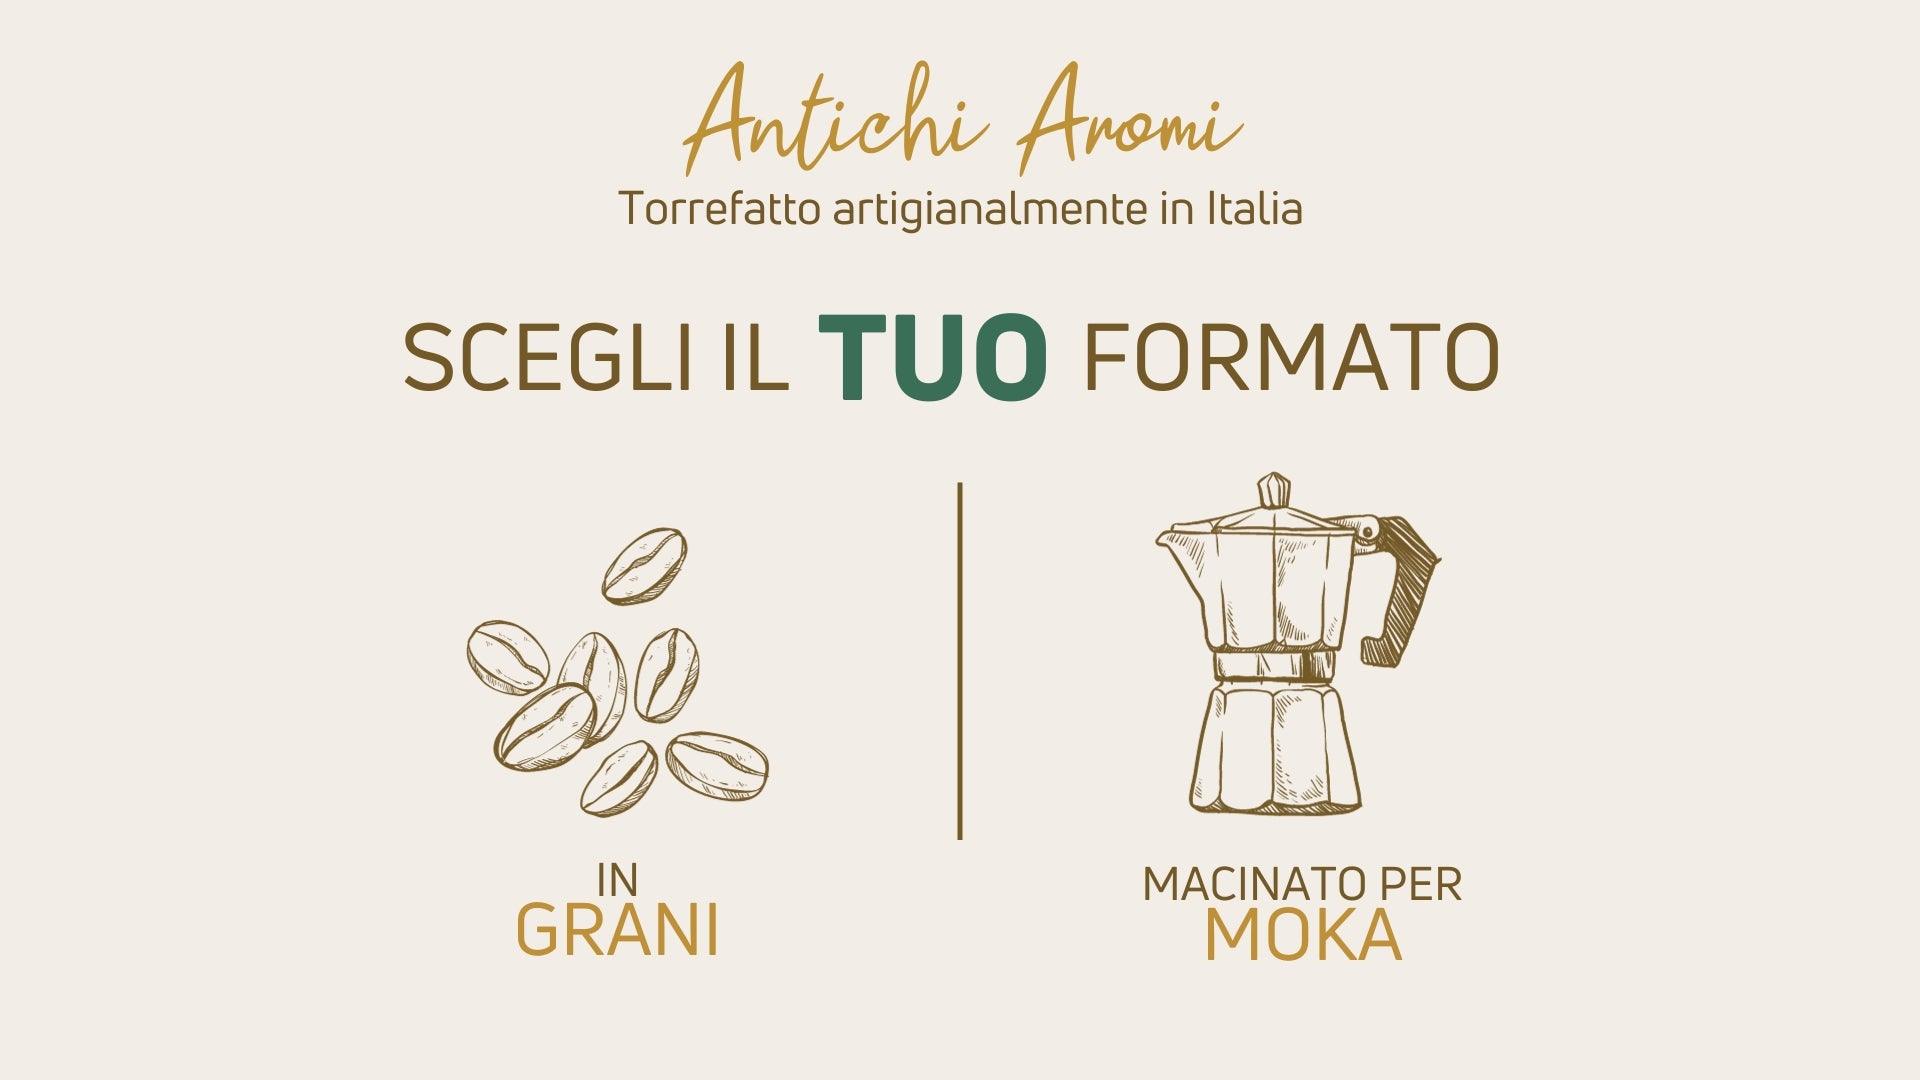 ANTICHI_AROMI_-_SCEGLI_IL_TUO_FORMATO_2 - Caffè Iaquinta